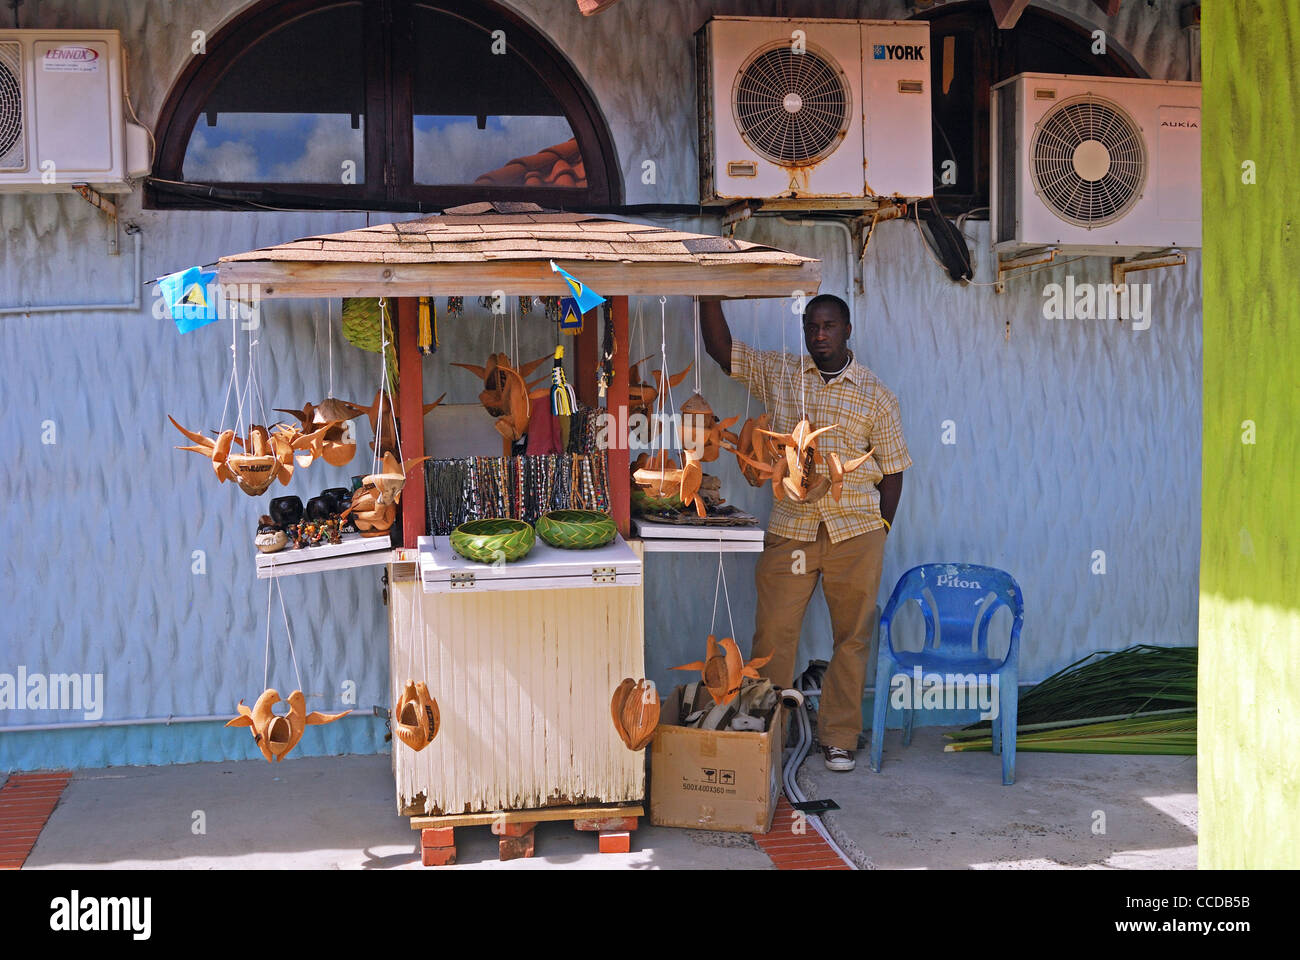 Vendeur de rue, la vente de souvenirs fabriqués localement, Castries, Sainte-Lucie, Caraïbes, Antilles. Banque D'Images